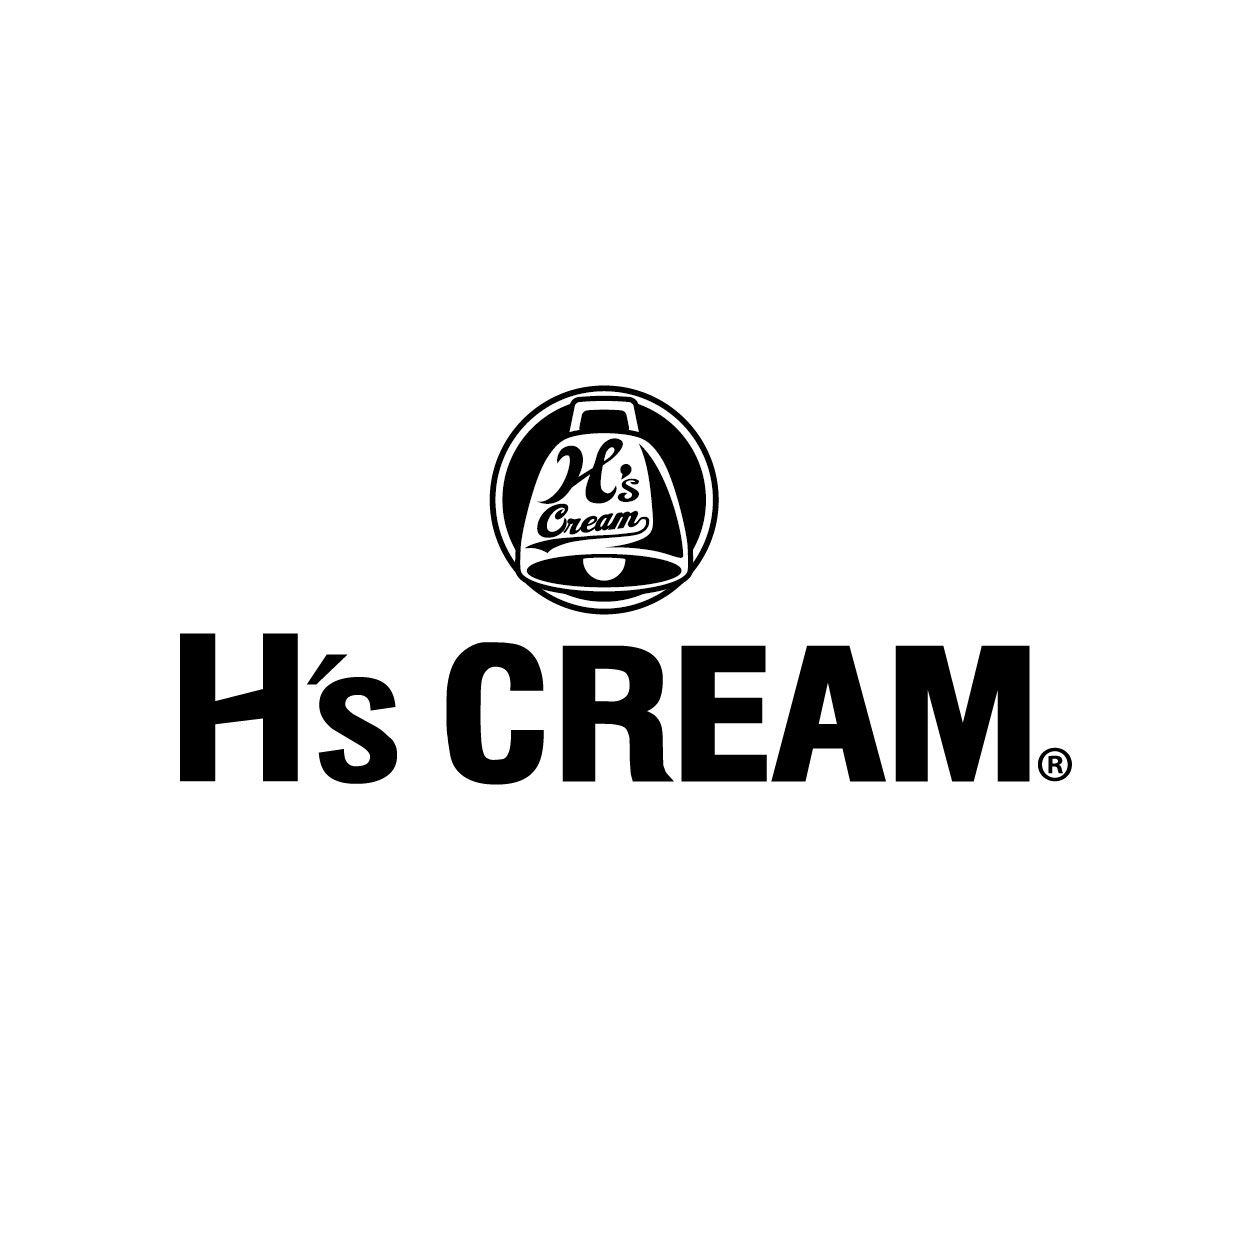 H’s CREAM